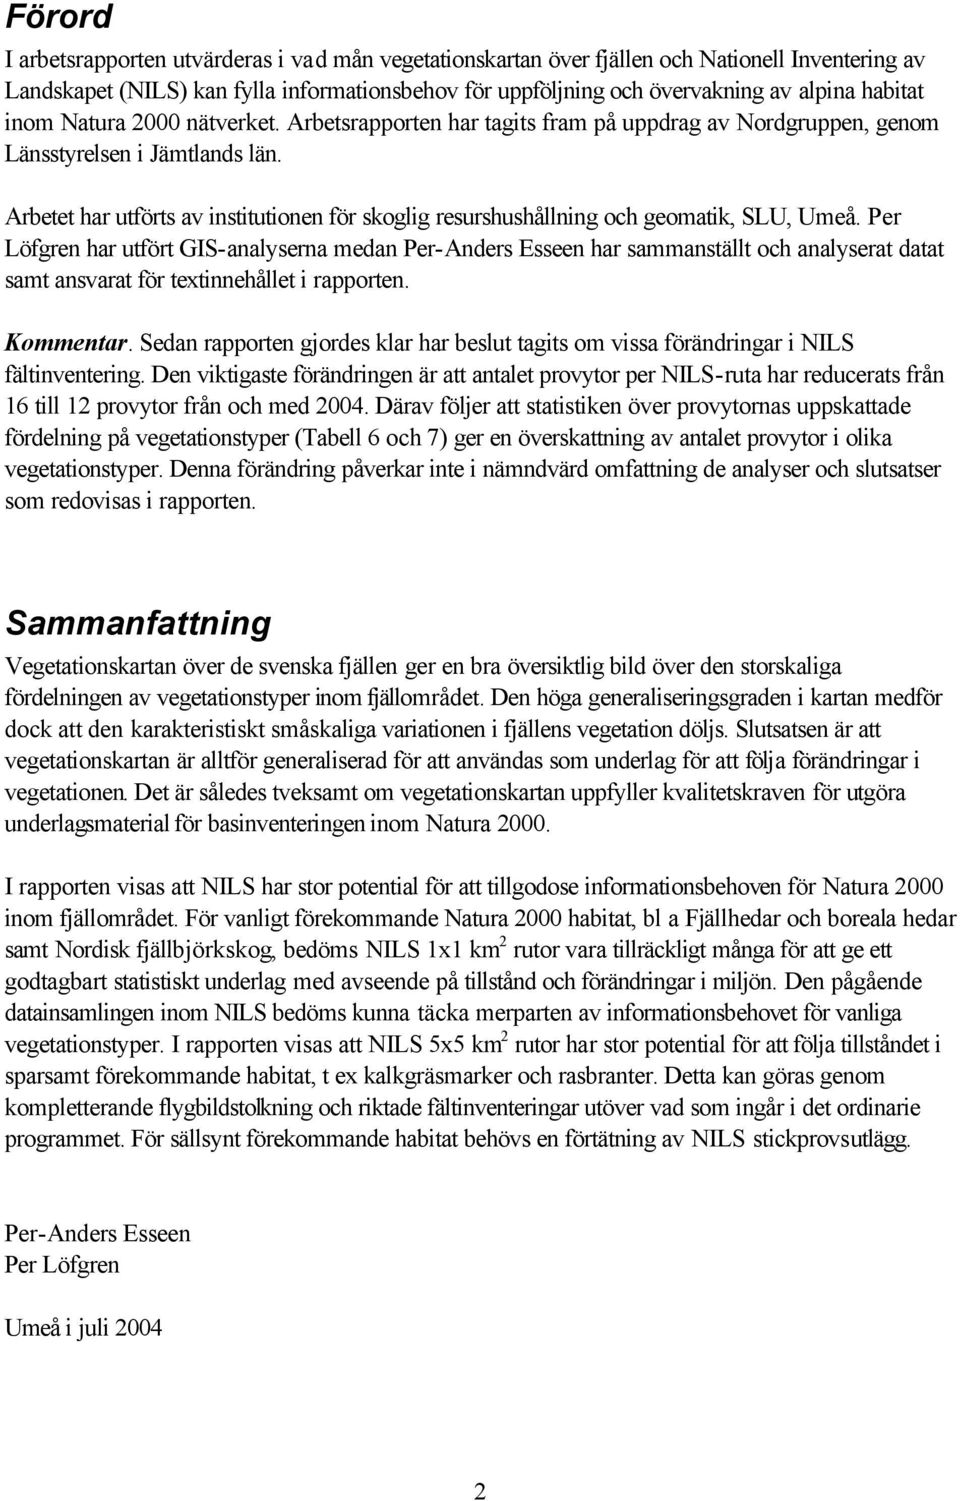 Arbetet har utförts av institutionen för skoglig resurshushållning och geomatik, SLU, Umeå.